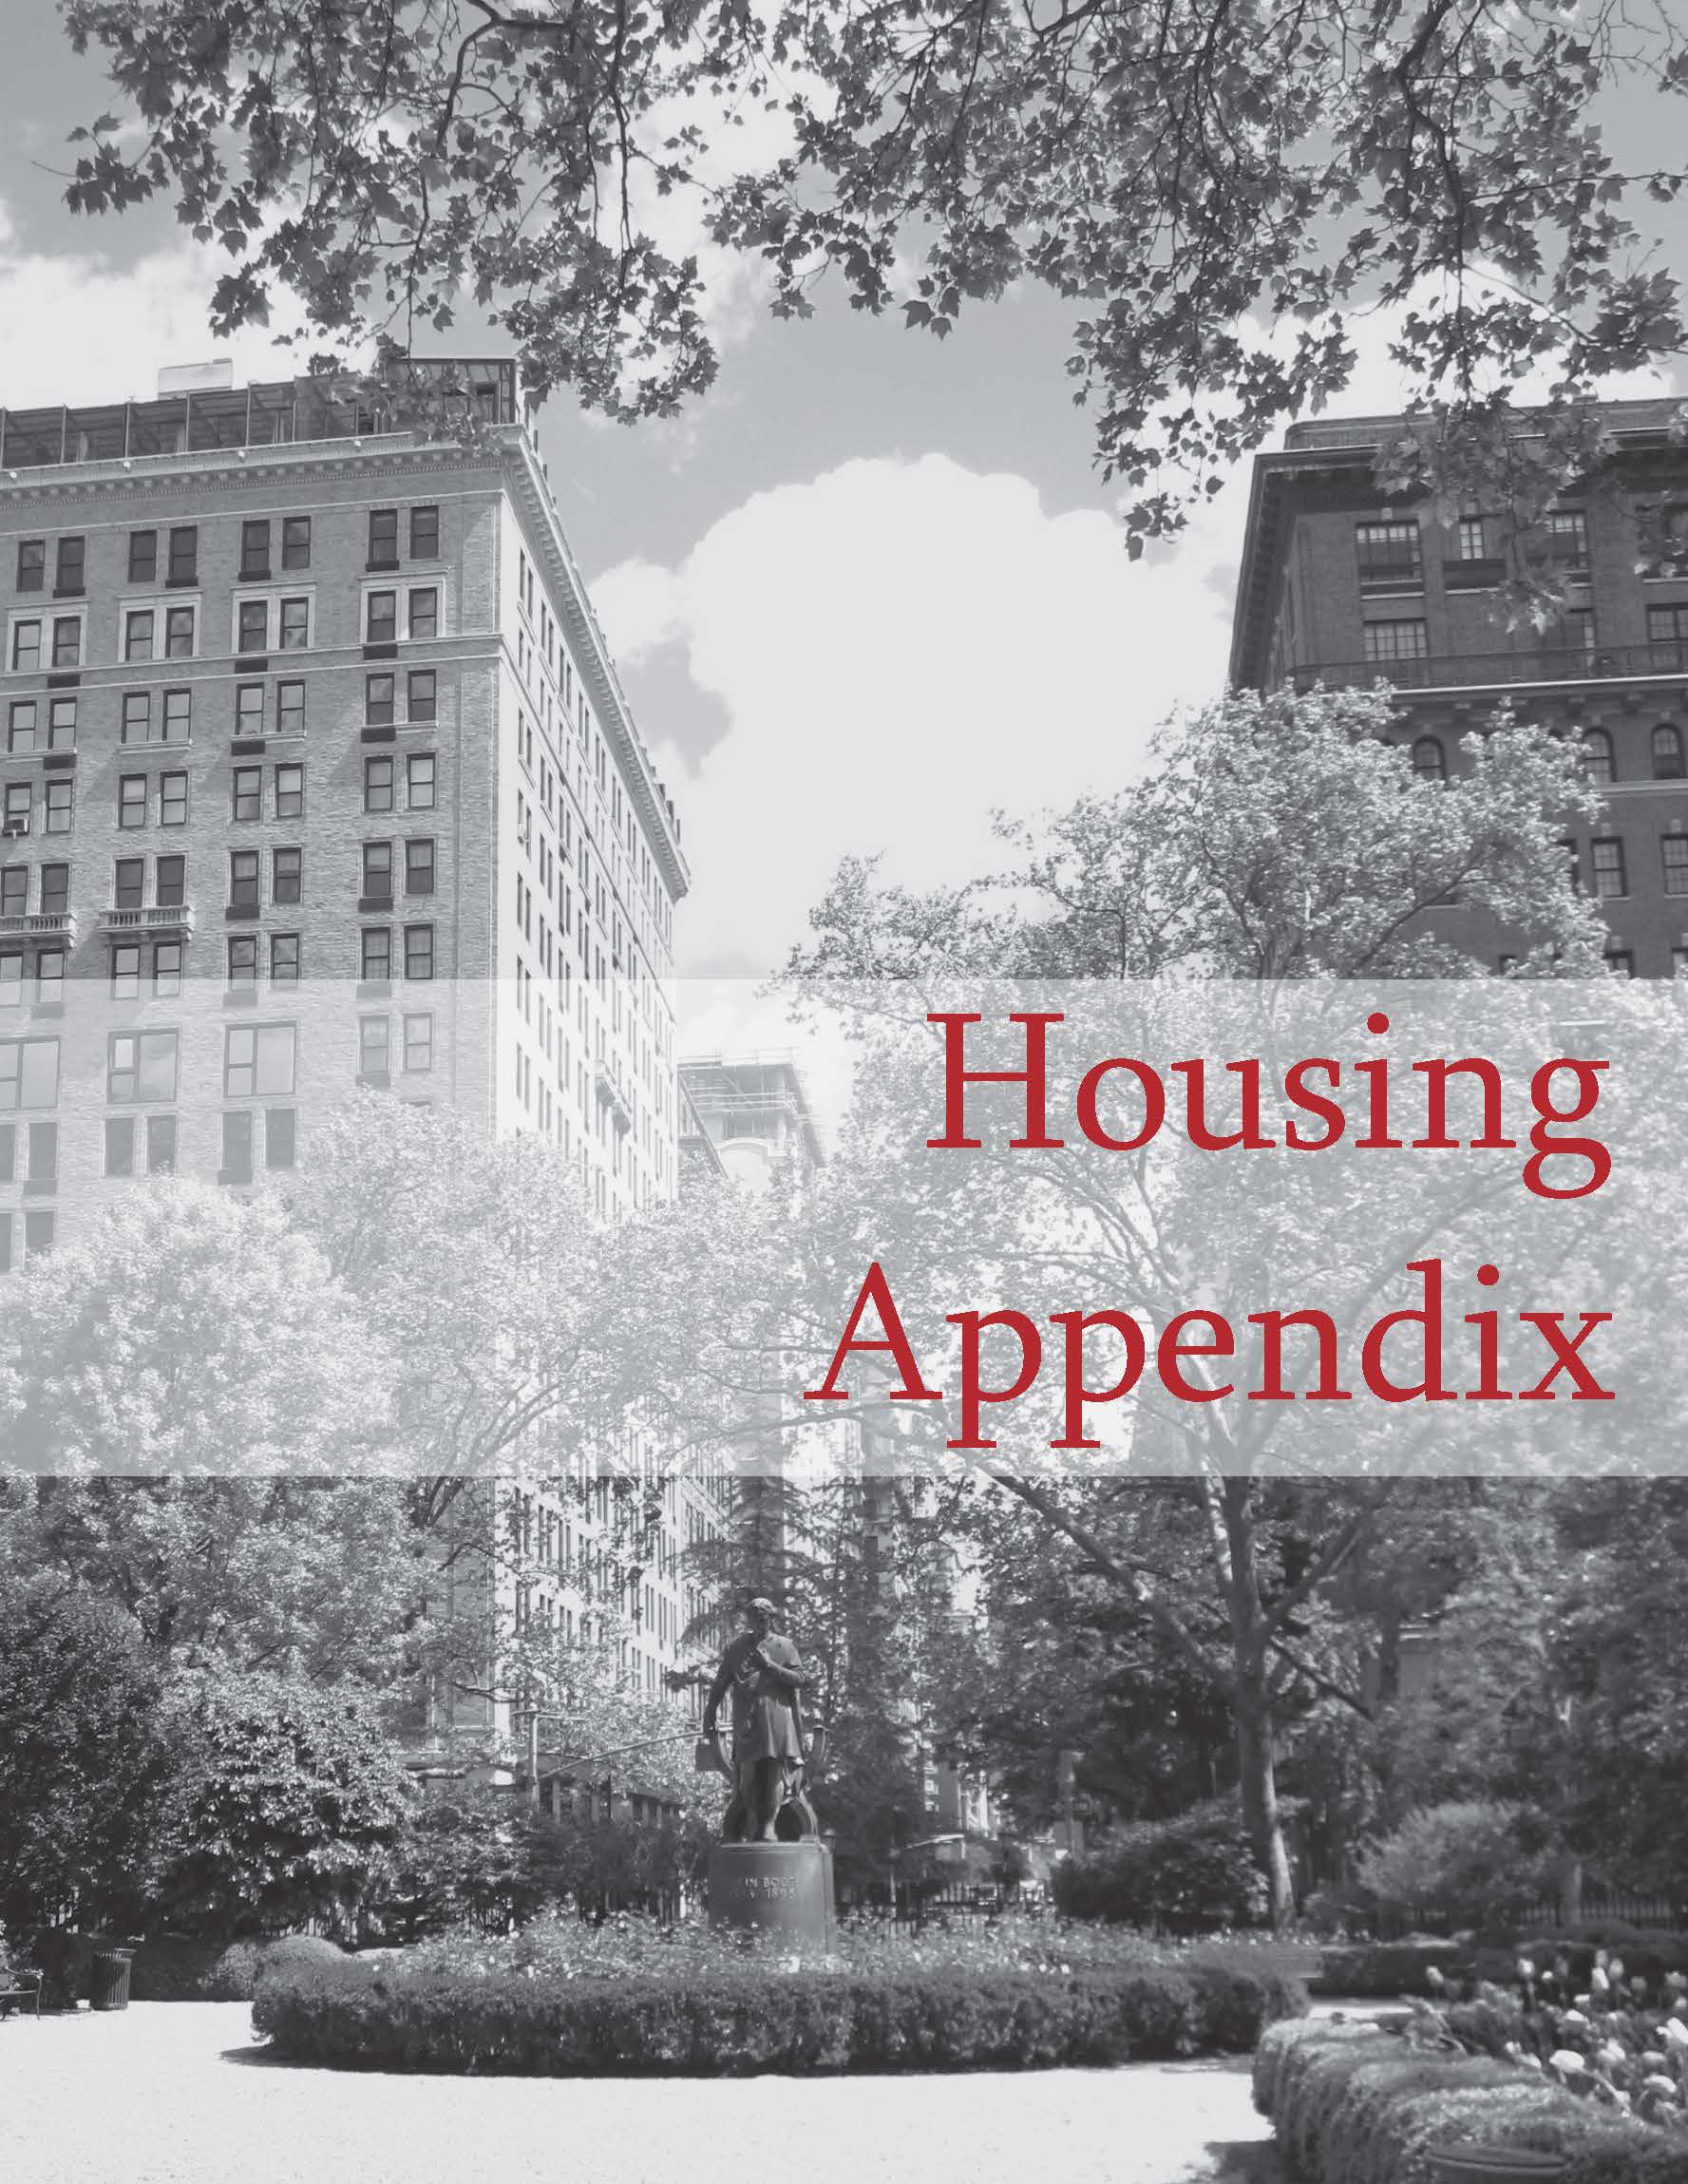 Housing appendix